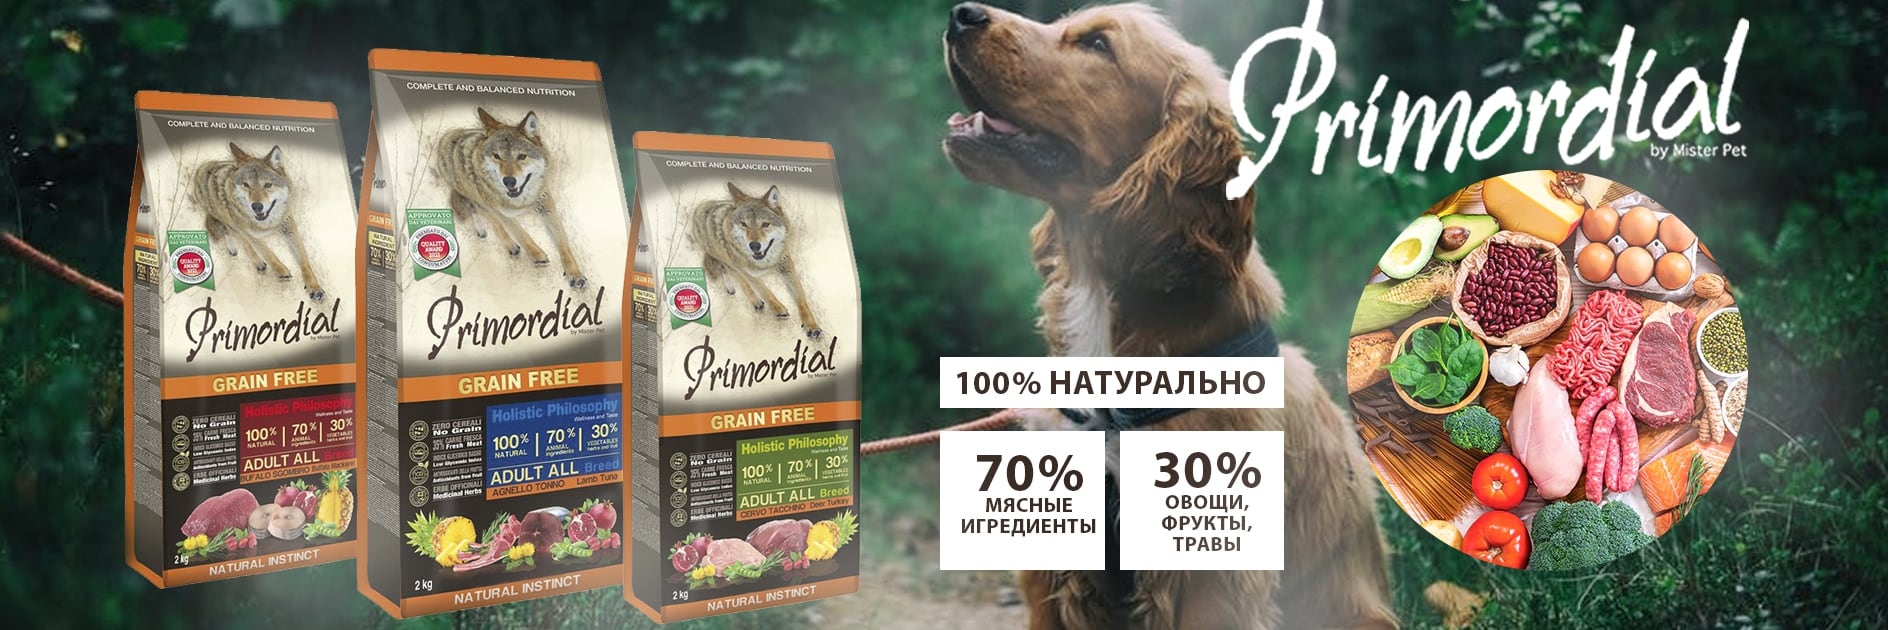 купить Сухие корма для собак Primordial с бесплатной доставкой в Калининграде